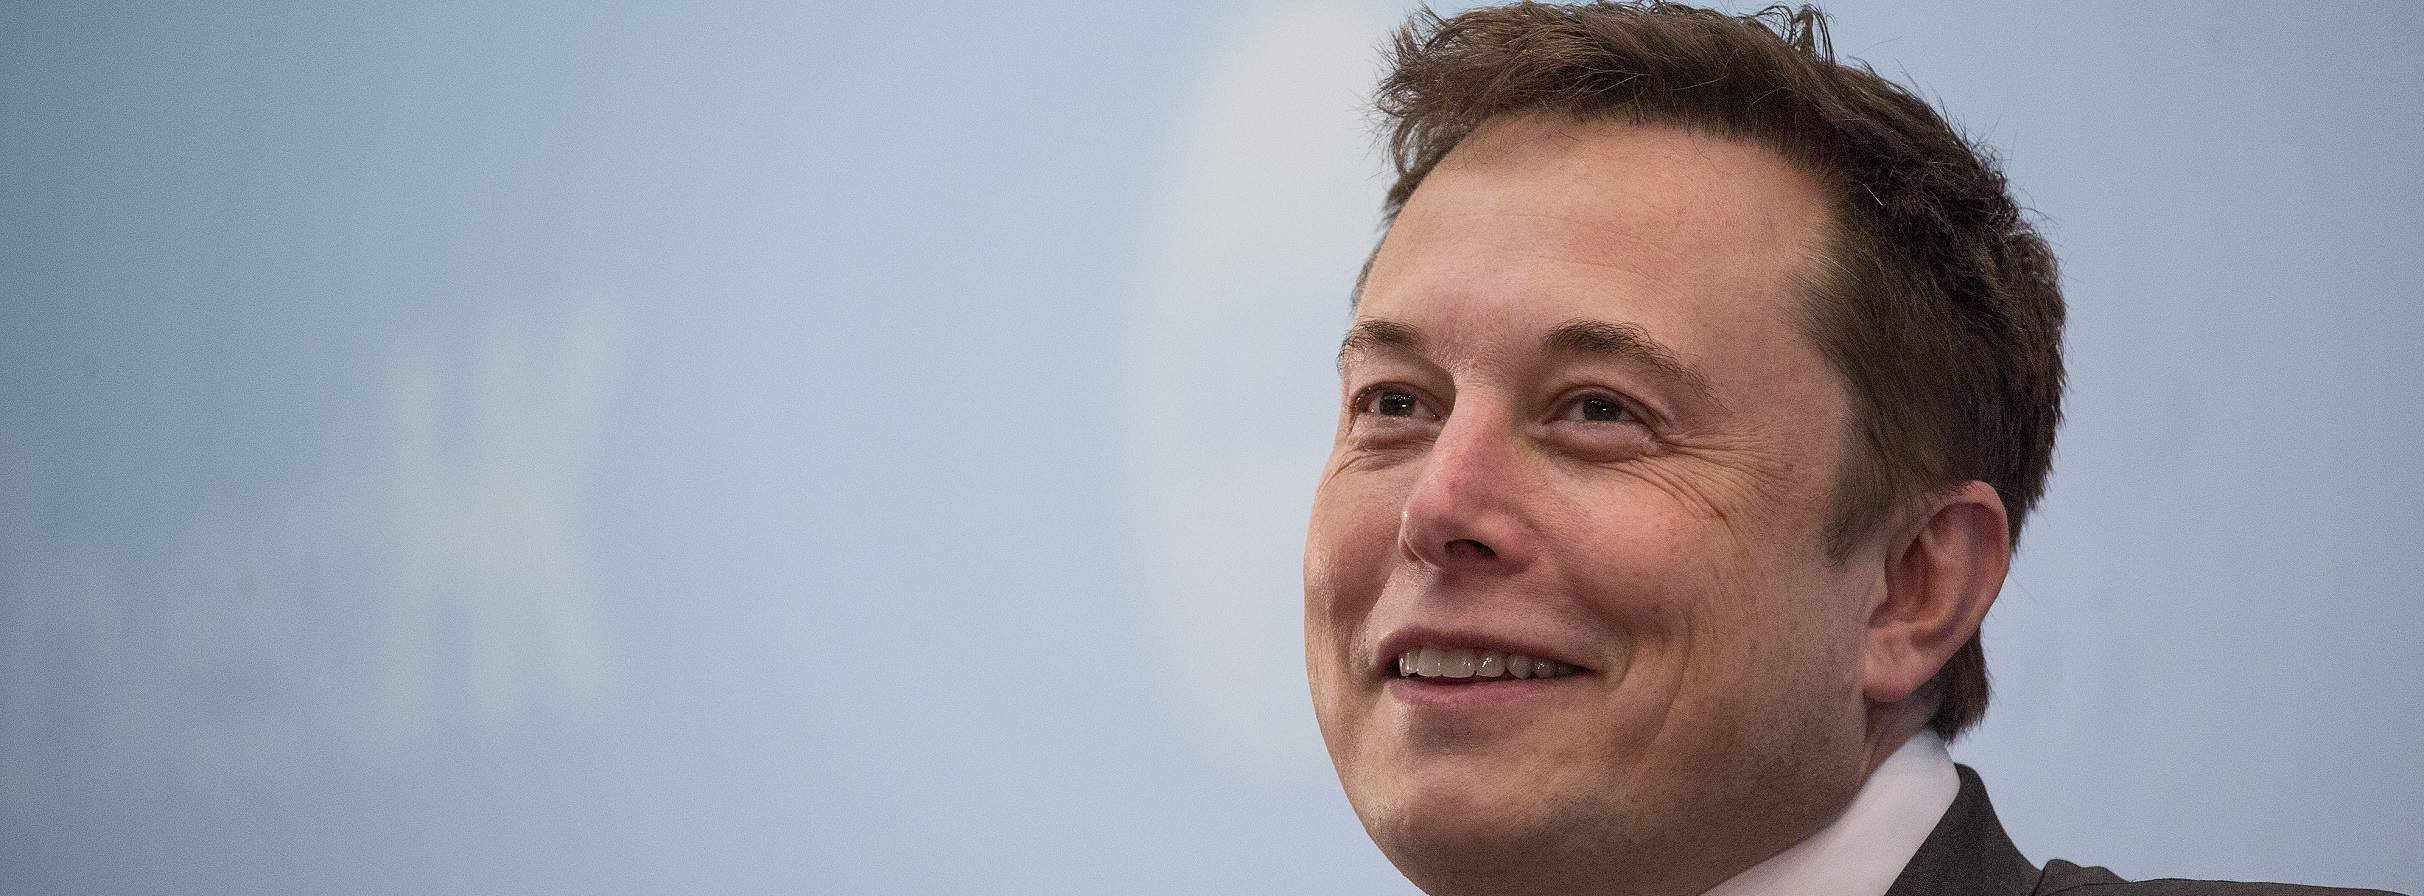 Elon Musk ri por último enquanto Wall Street tem ano difícil